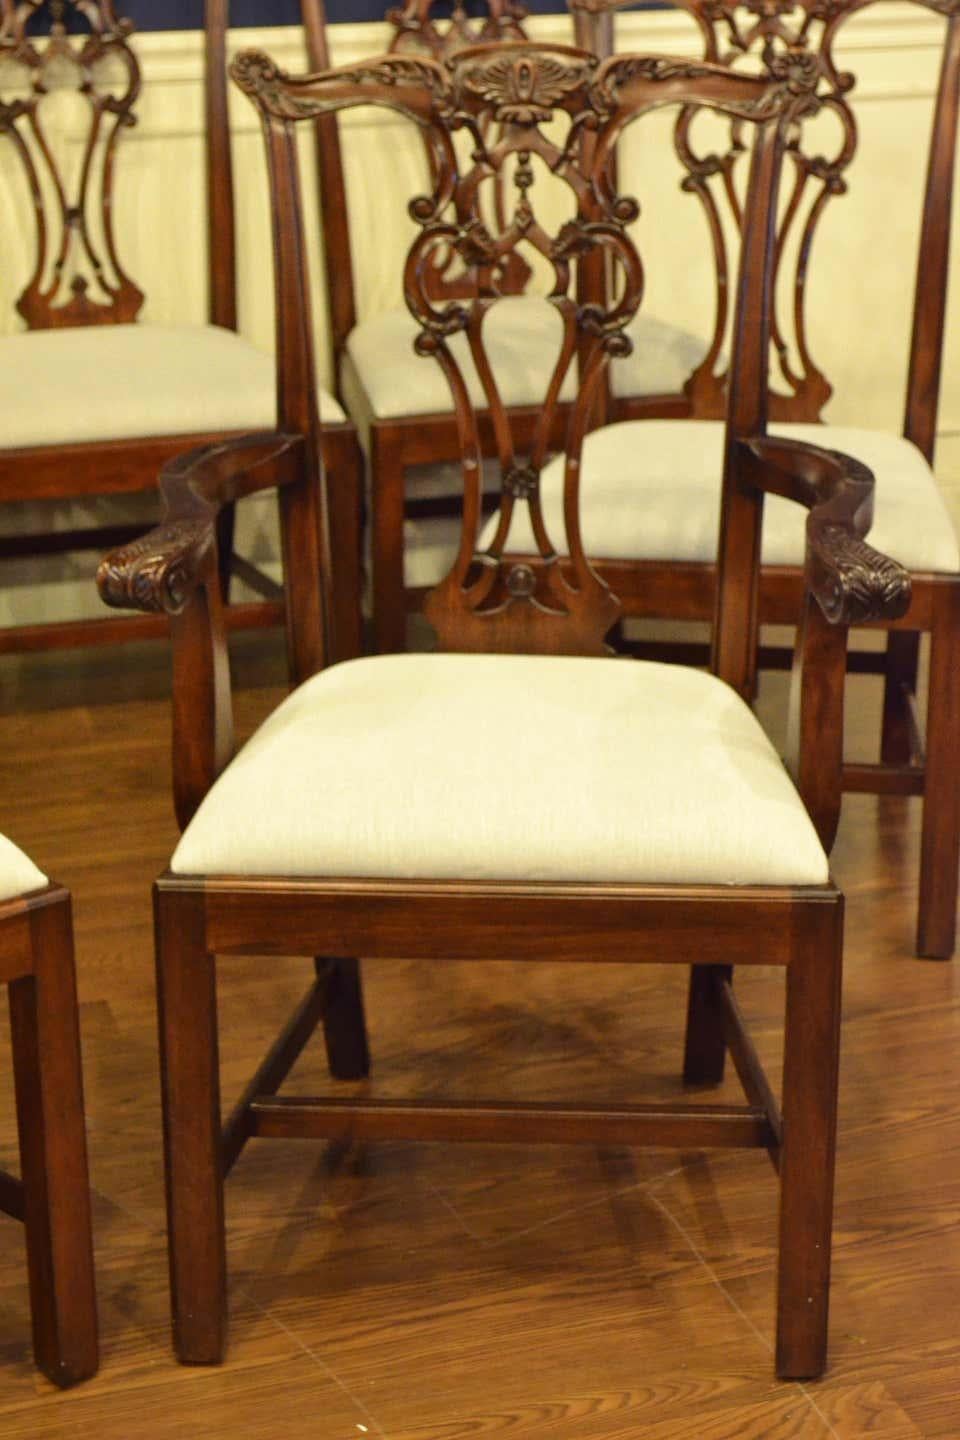 Il s'agit de nouvelles chaises de salle à manger traditionnelles en acajou. Leur conception s'inspire des chaises de salle à manger anglaises à pieds droits de style Chippendale de la période géorgienne. Ils présentent un style classique Chippendale